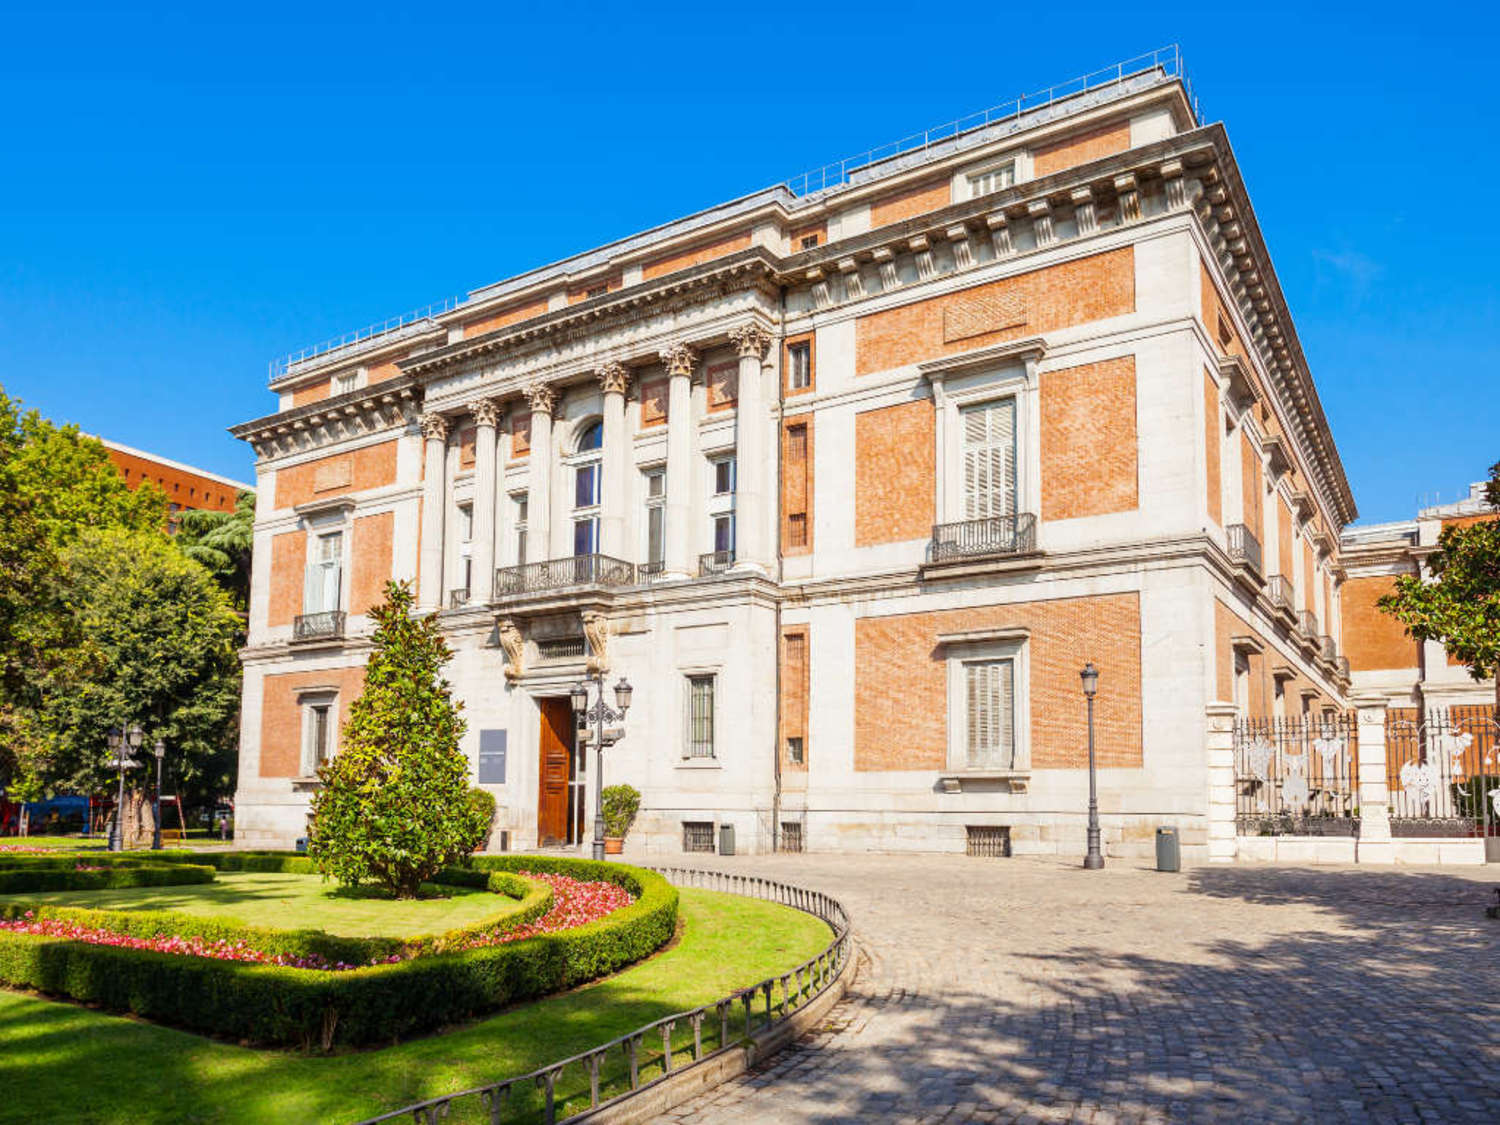 The Prado Museum in Madrid, Spain 